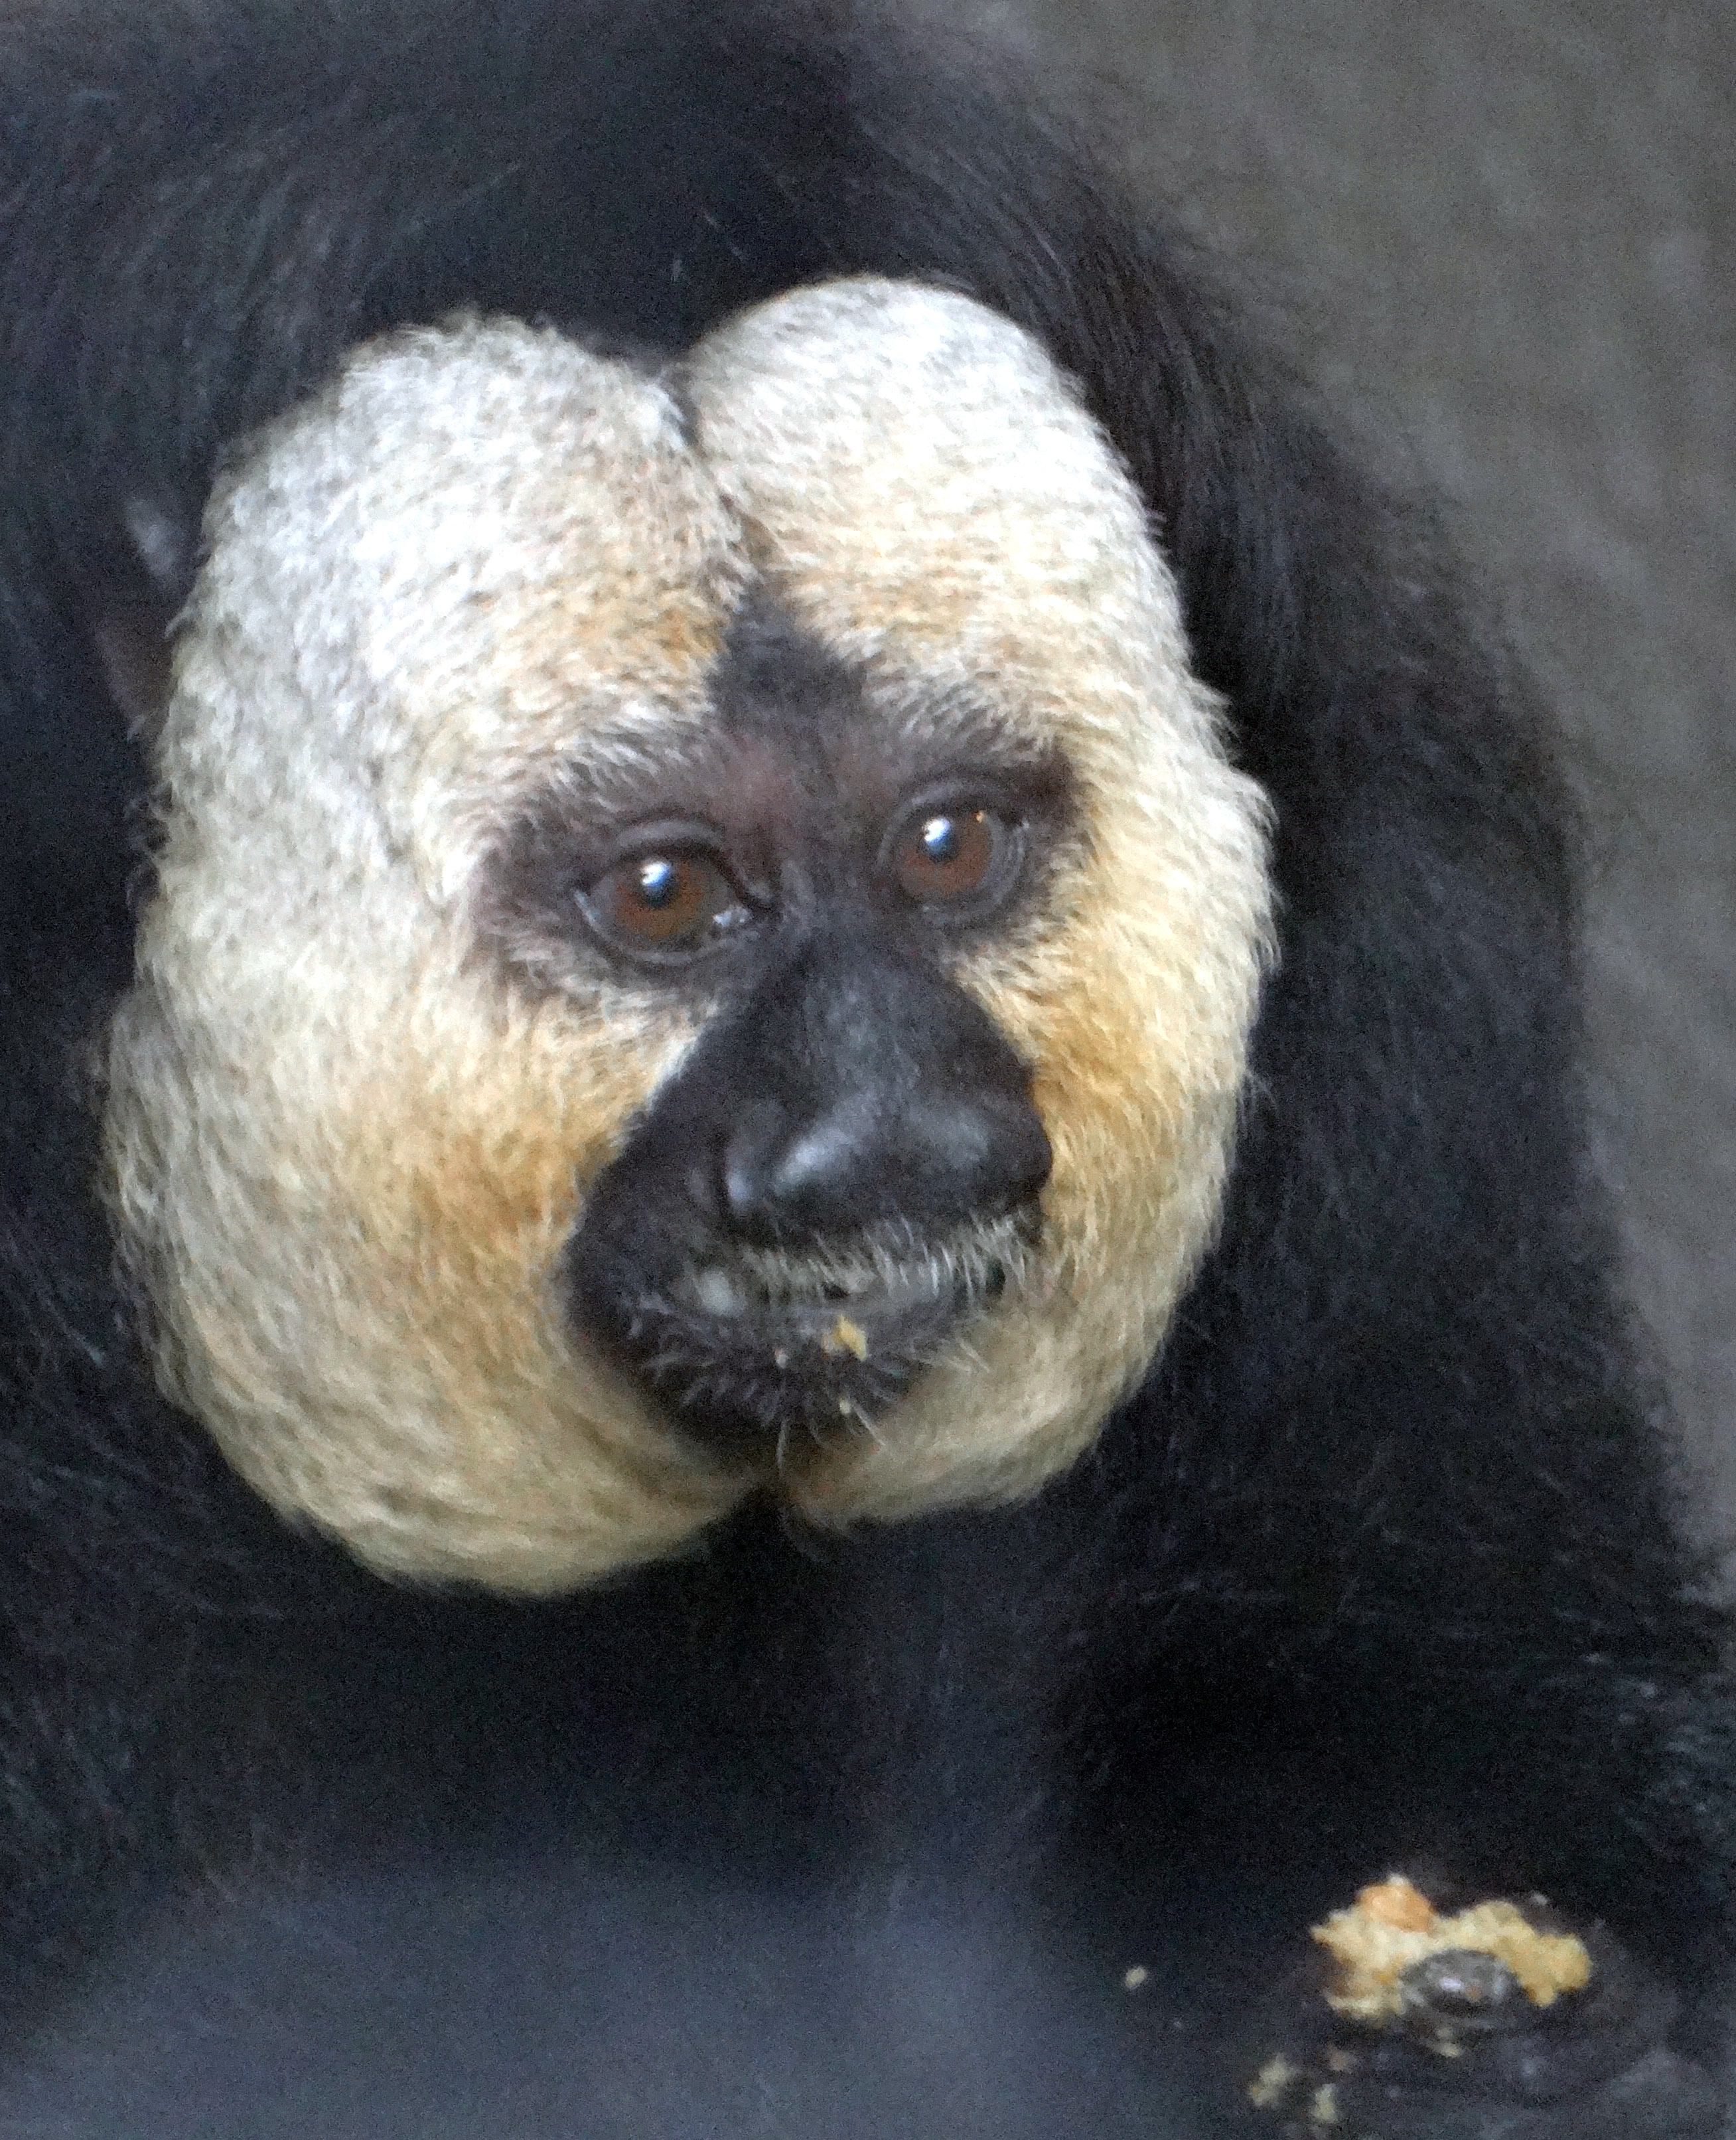 White-faced Saki Monkey at Bronx Zoo